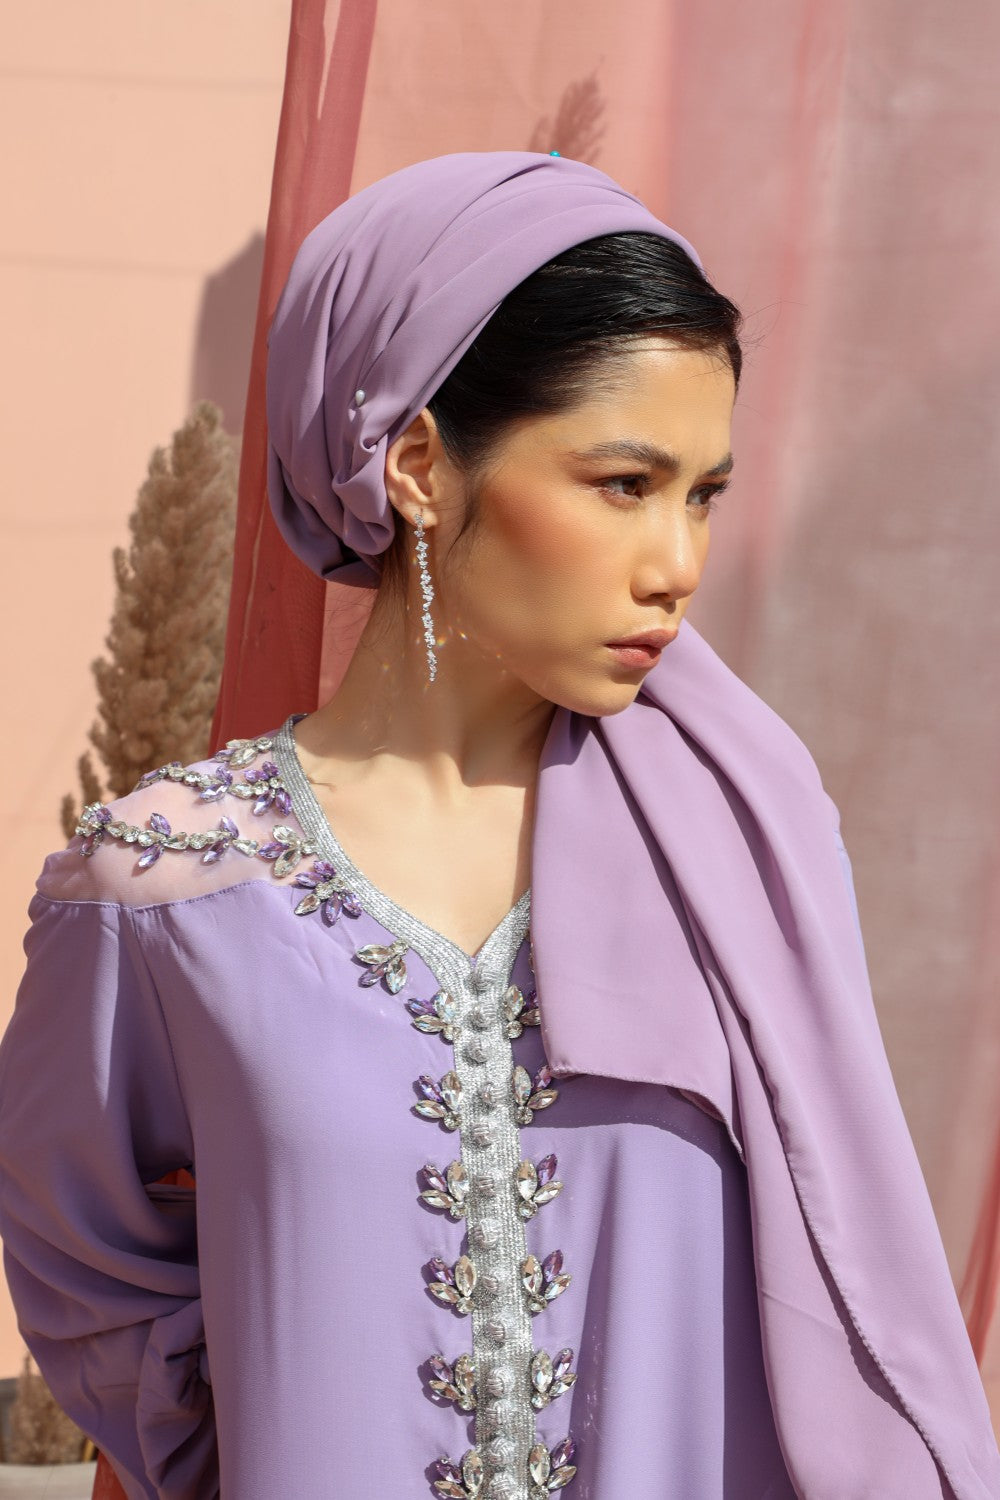 Serene-Lilac-Dress,Serene,Lilac,occassion abaya,modest wear abaya,smamz abaya